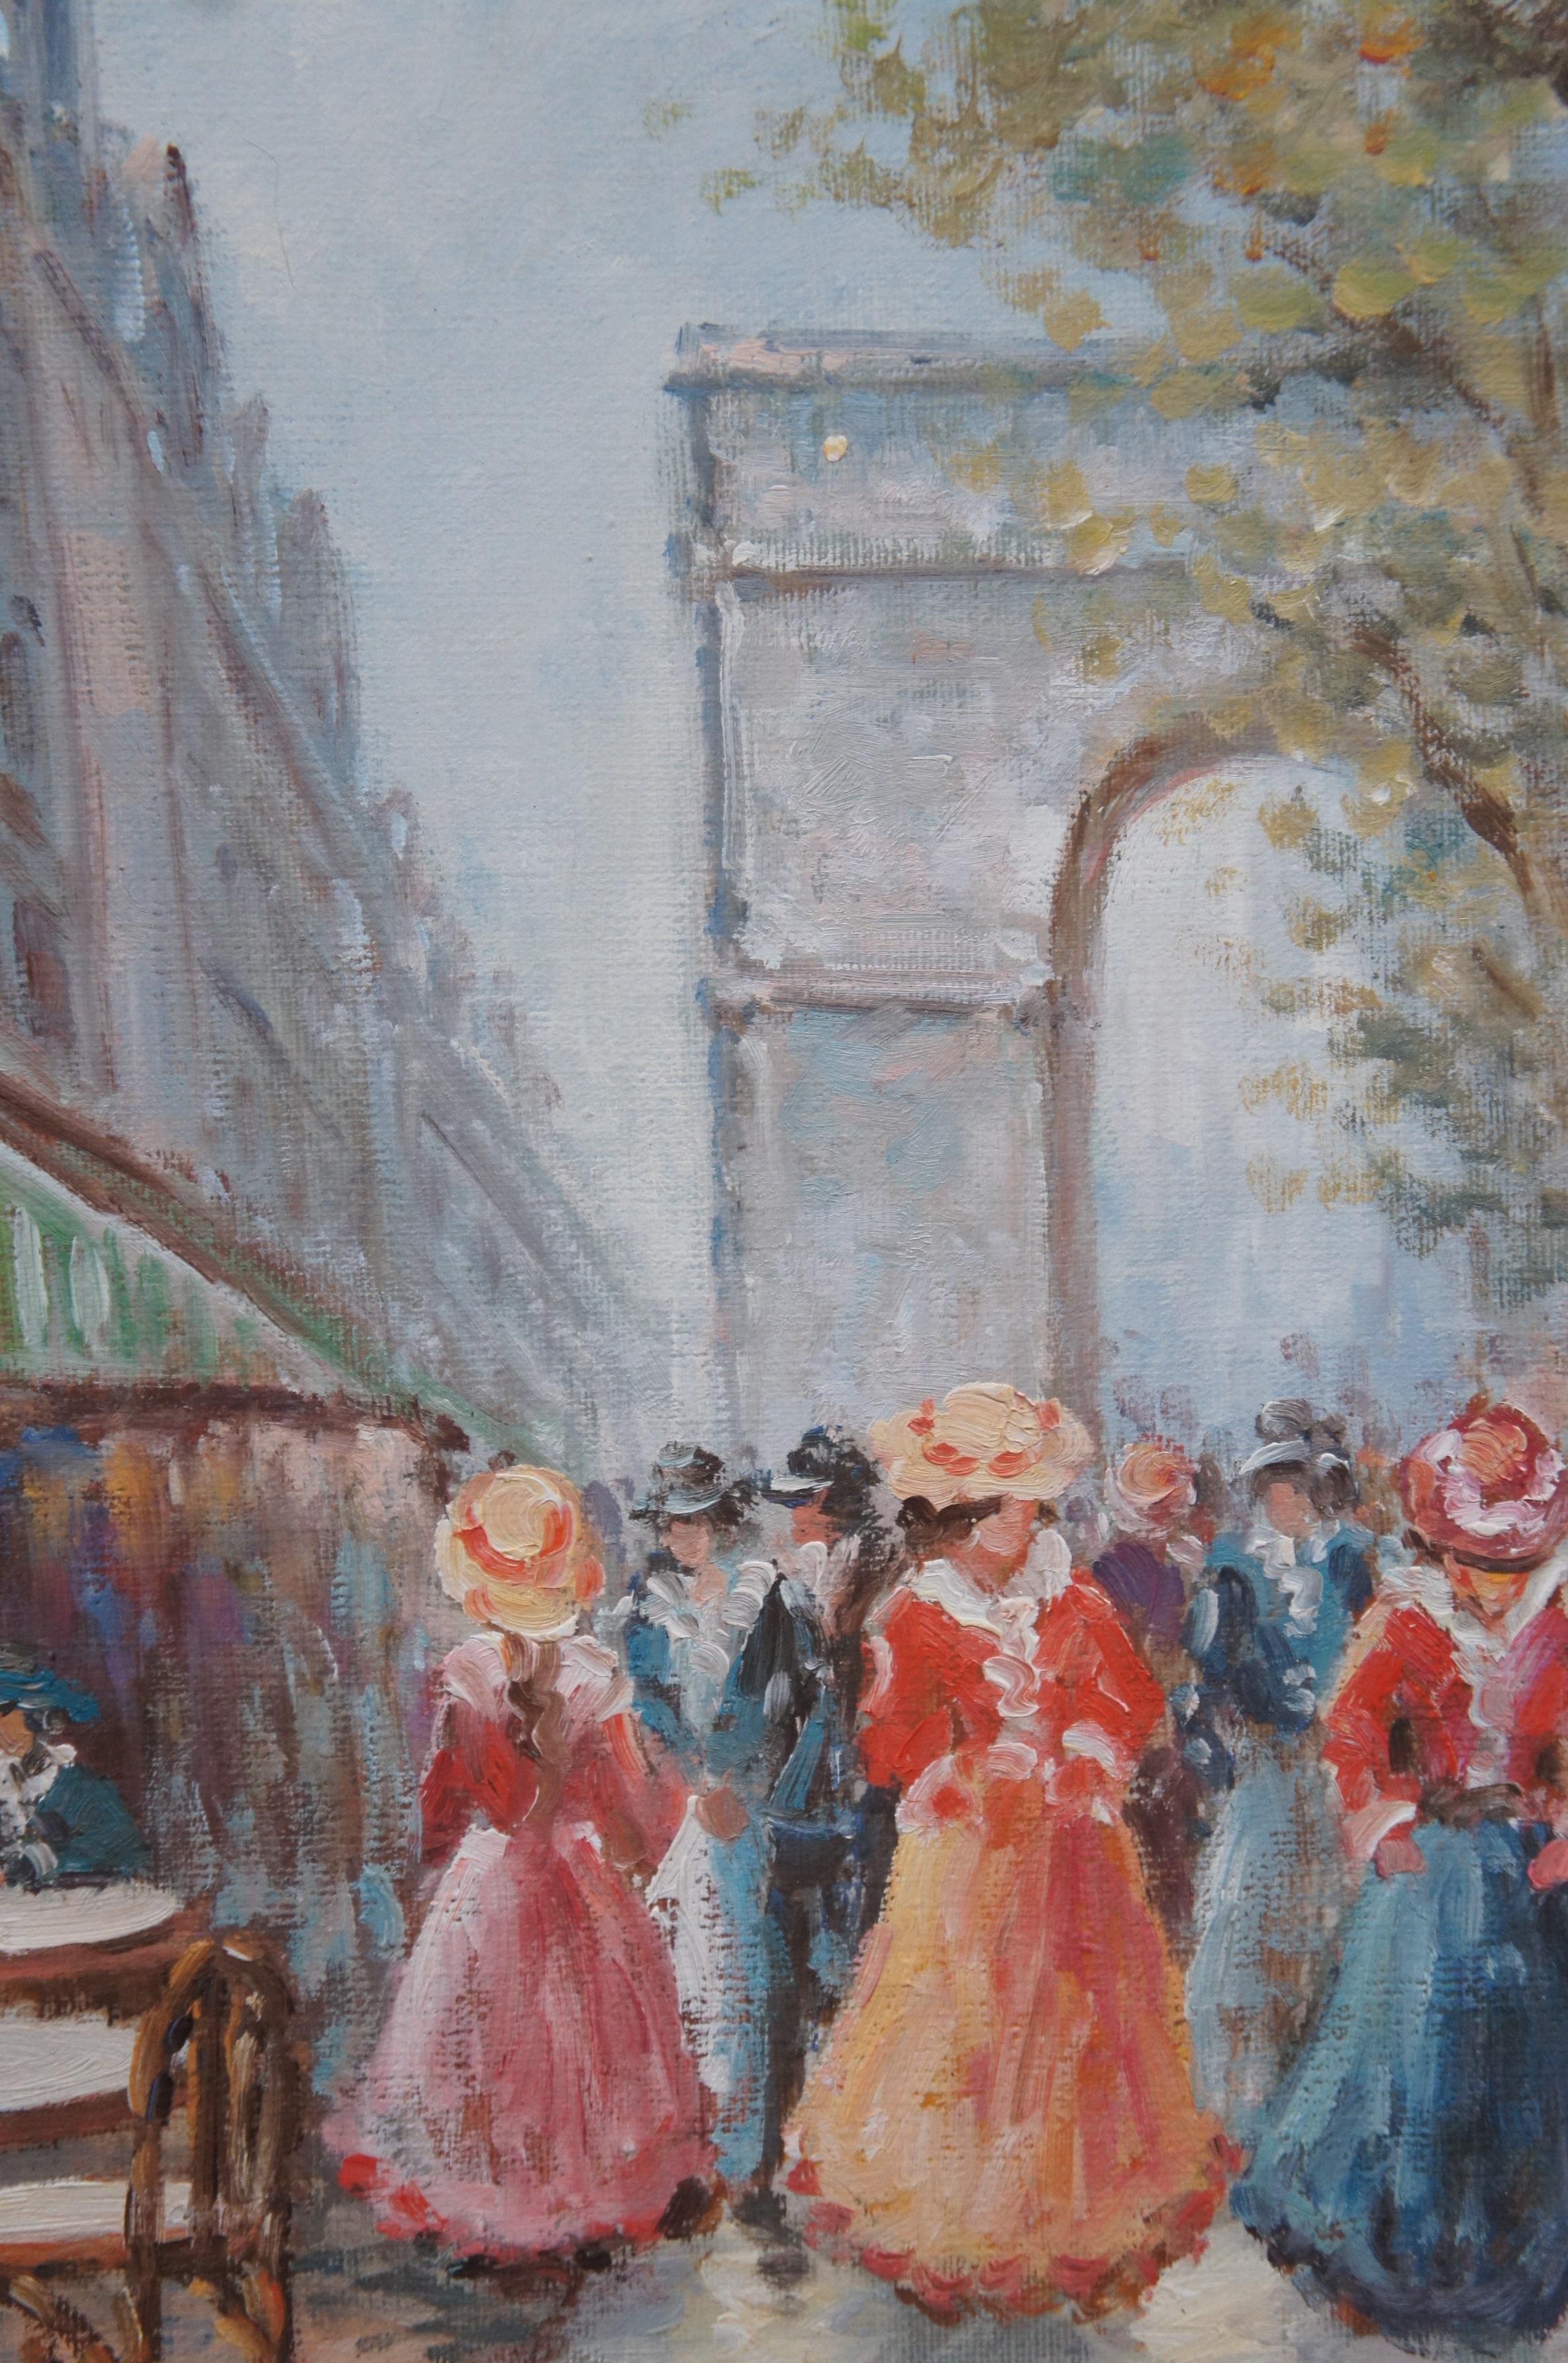 French Impressionist Paris Cityscape Arc de Triomphe Oil Painting on Canvas 44